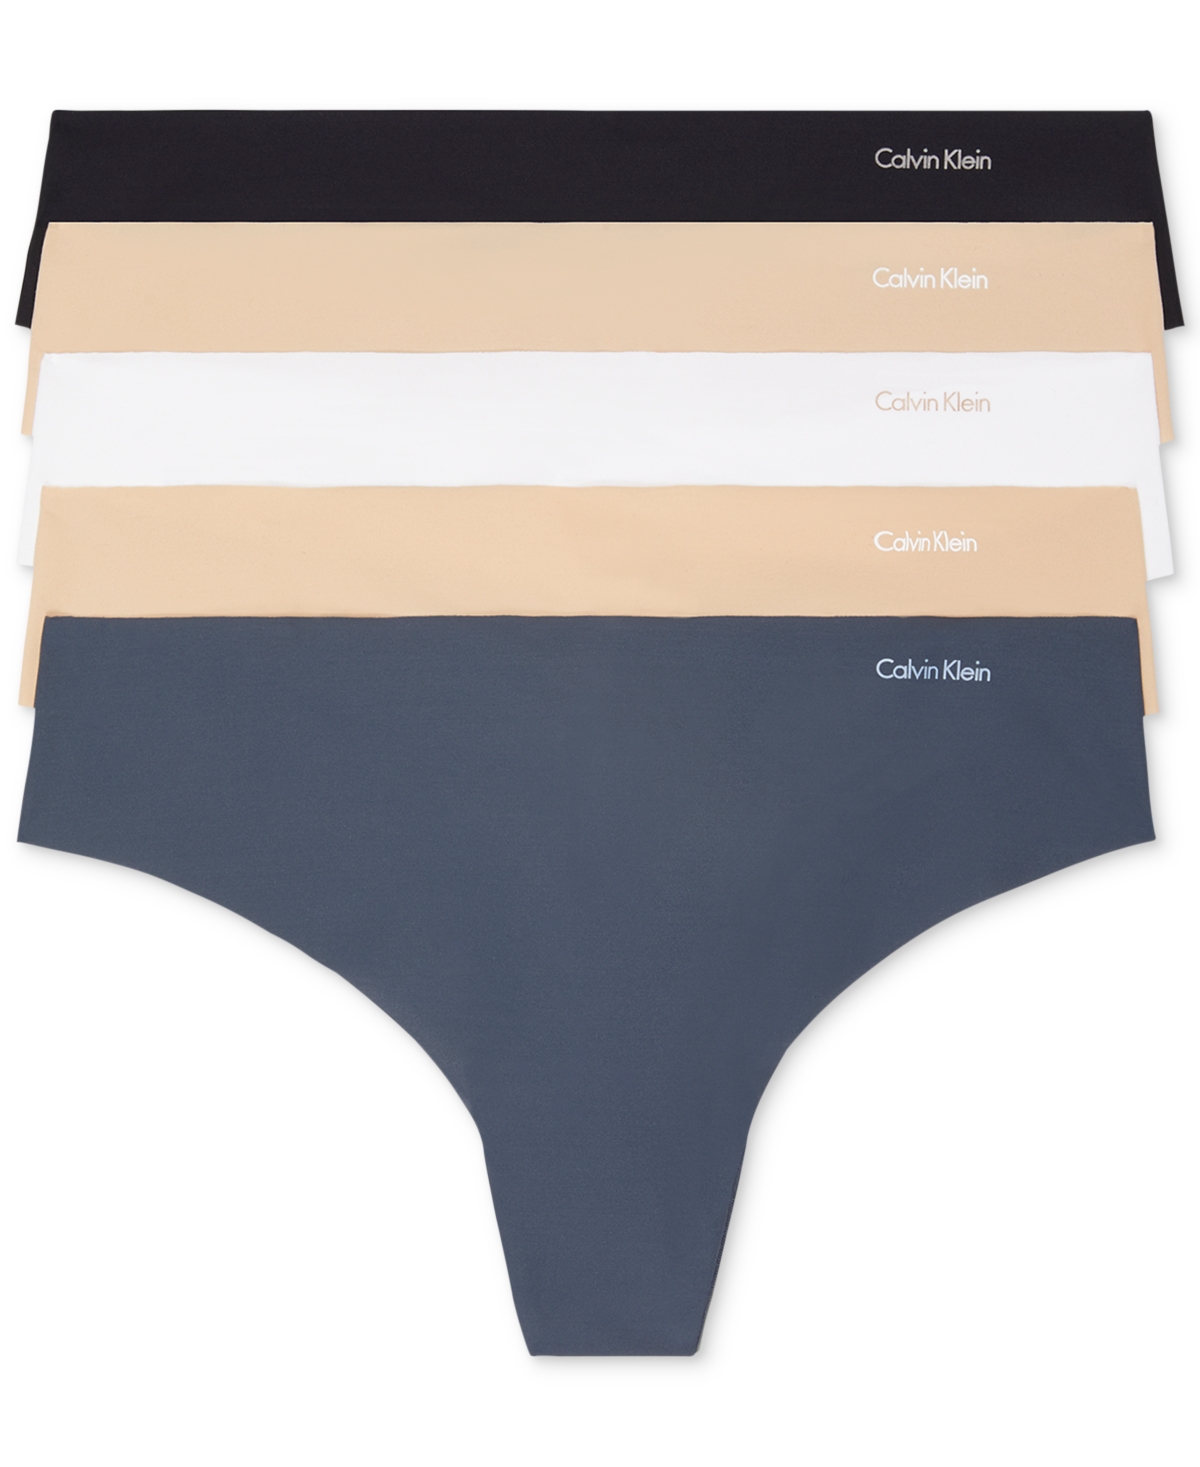 Calvin Klein Invisible 5-pack Thong Underwear Qd3556 In Black,speakeasy,white,caramel